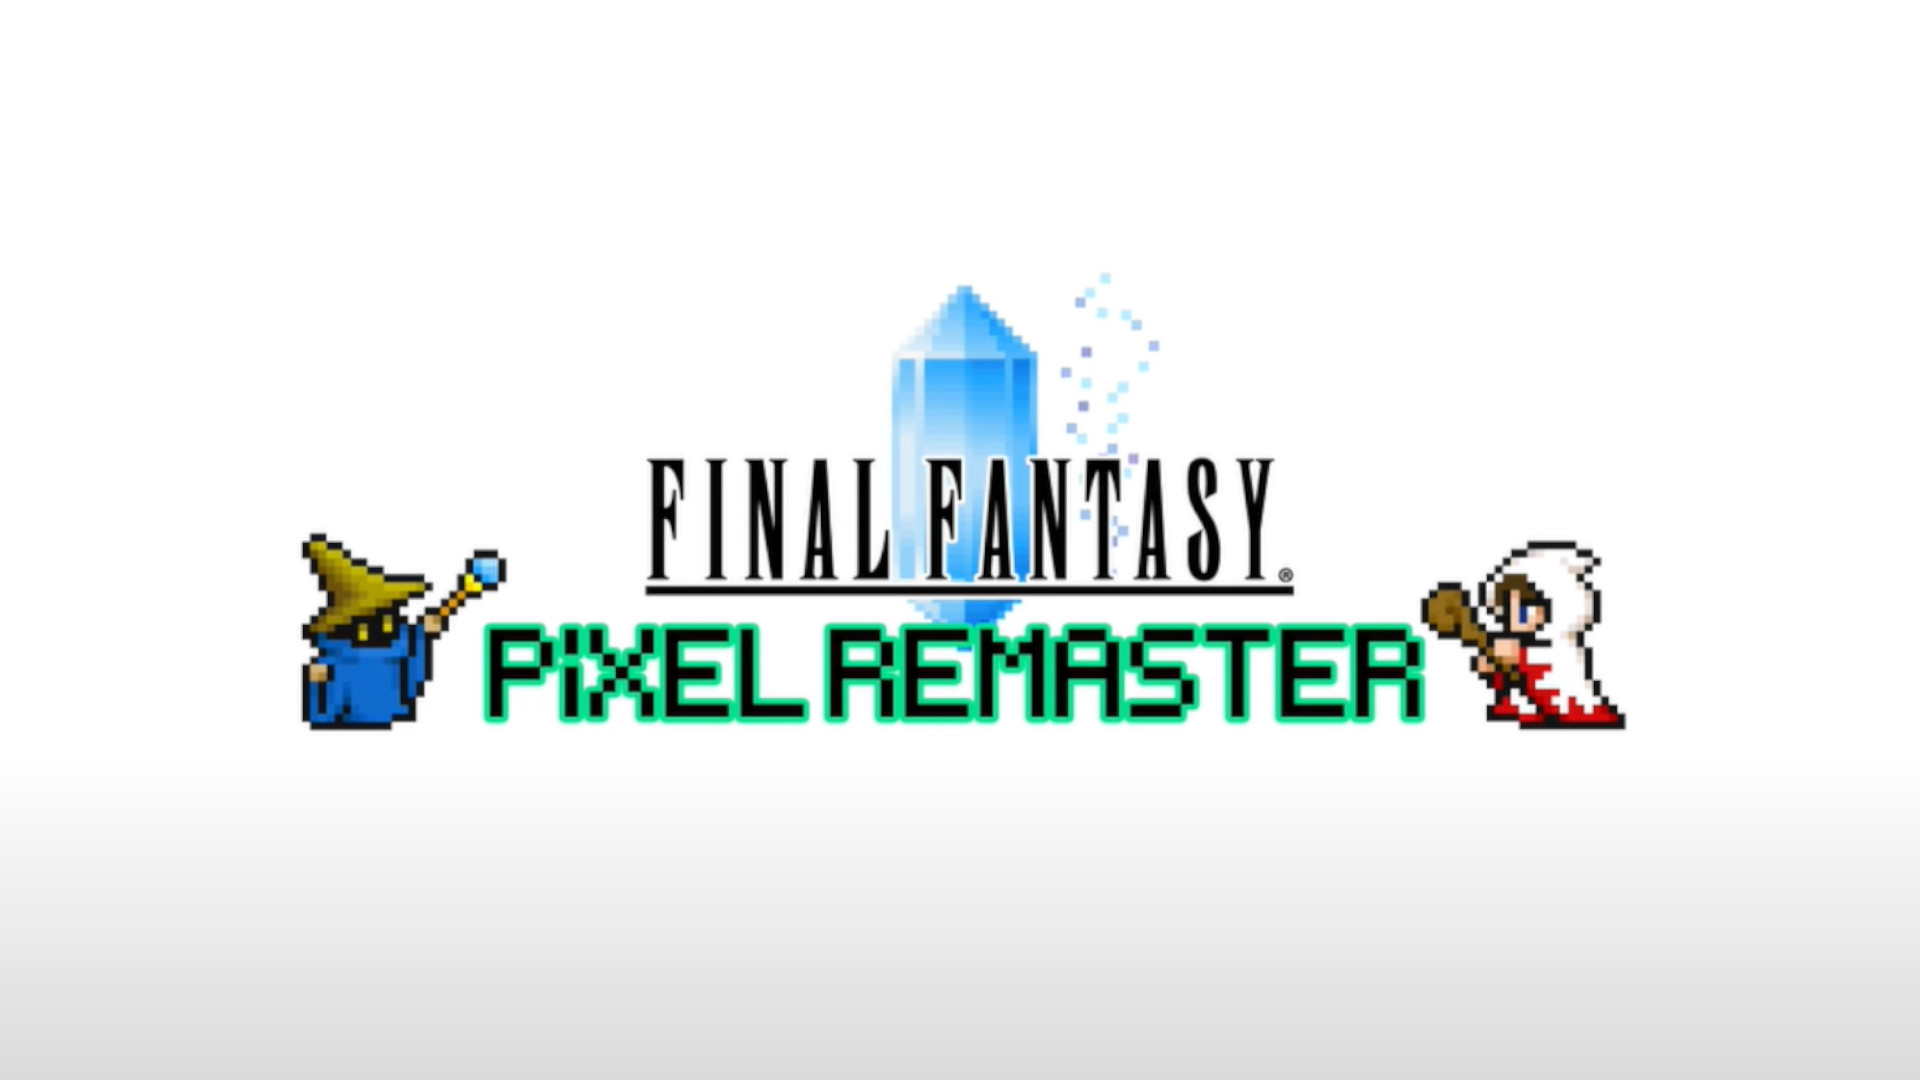 Pēdējais fantāzijas pikseļu remasters